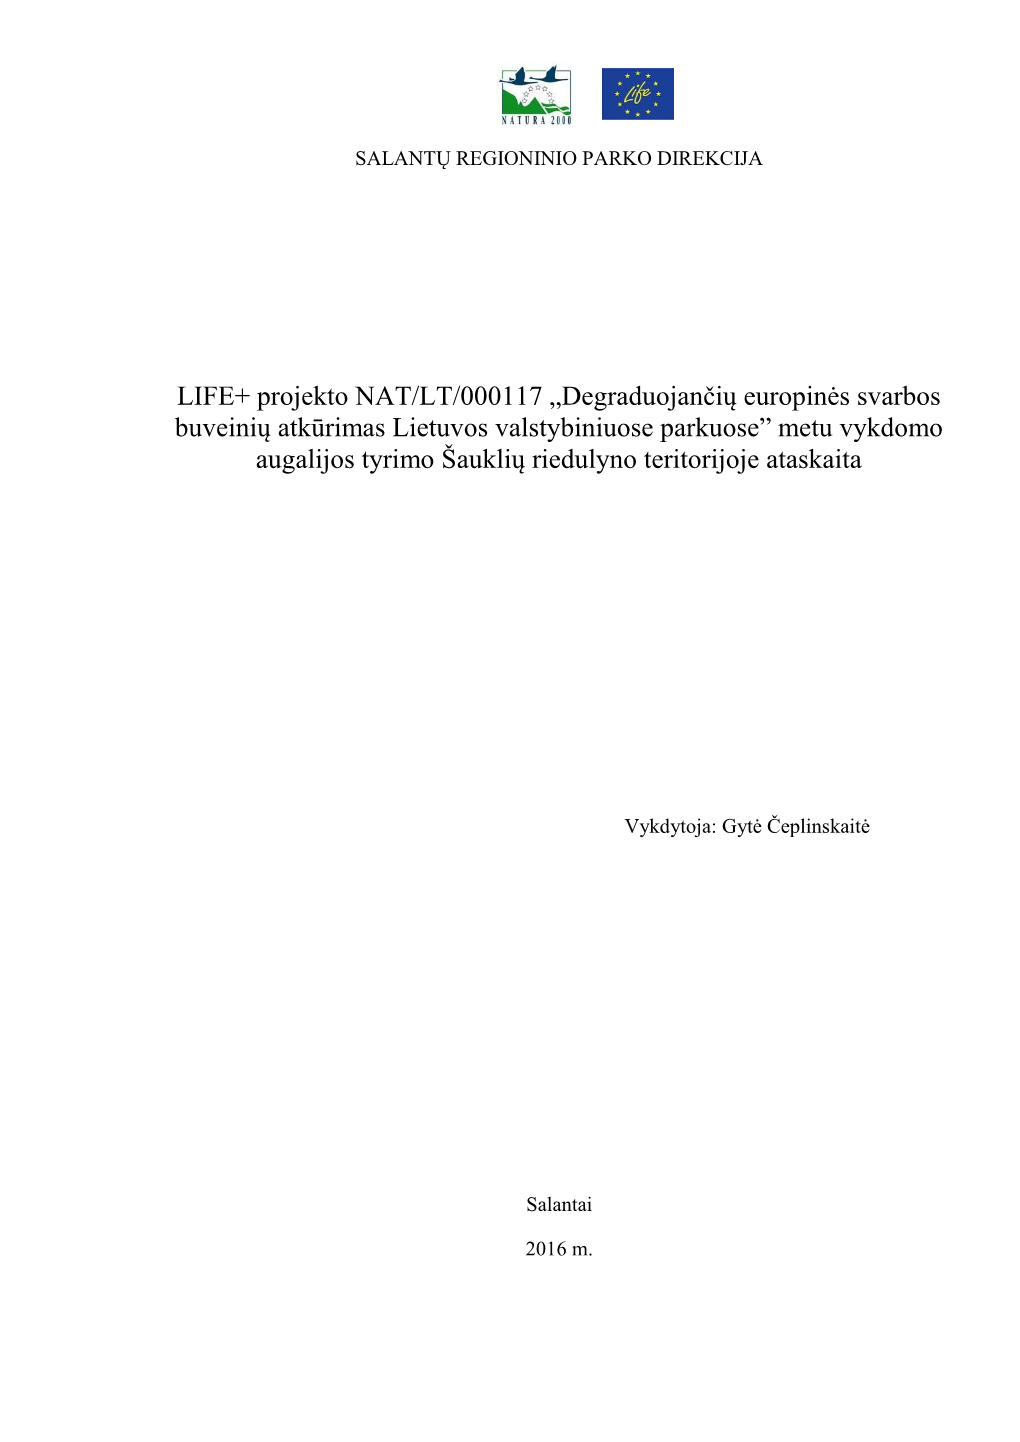 LIFE+ Projekto NAT/LT/000117 „Degraduojančių Europinės